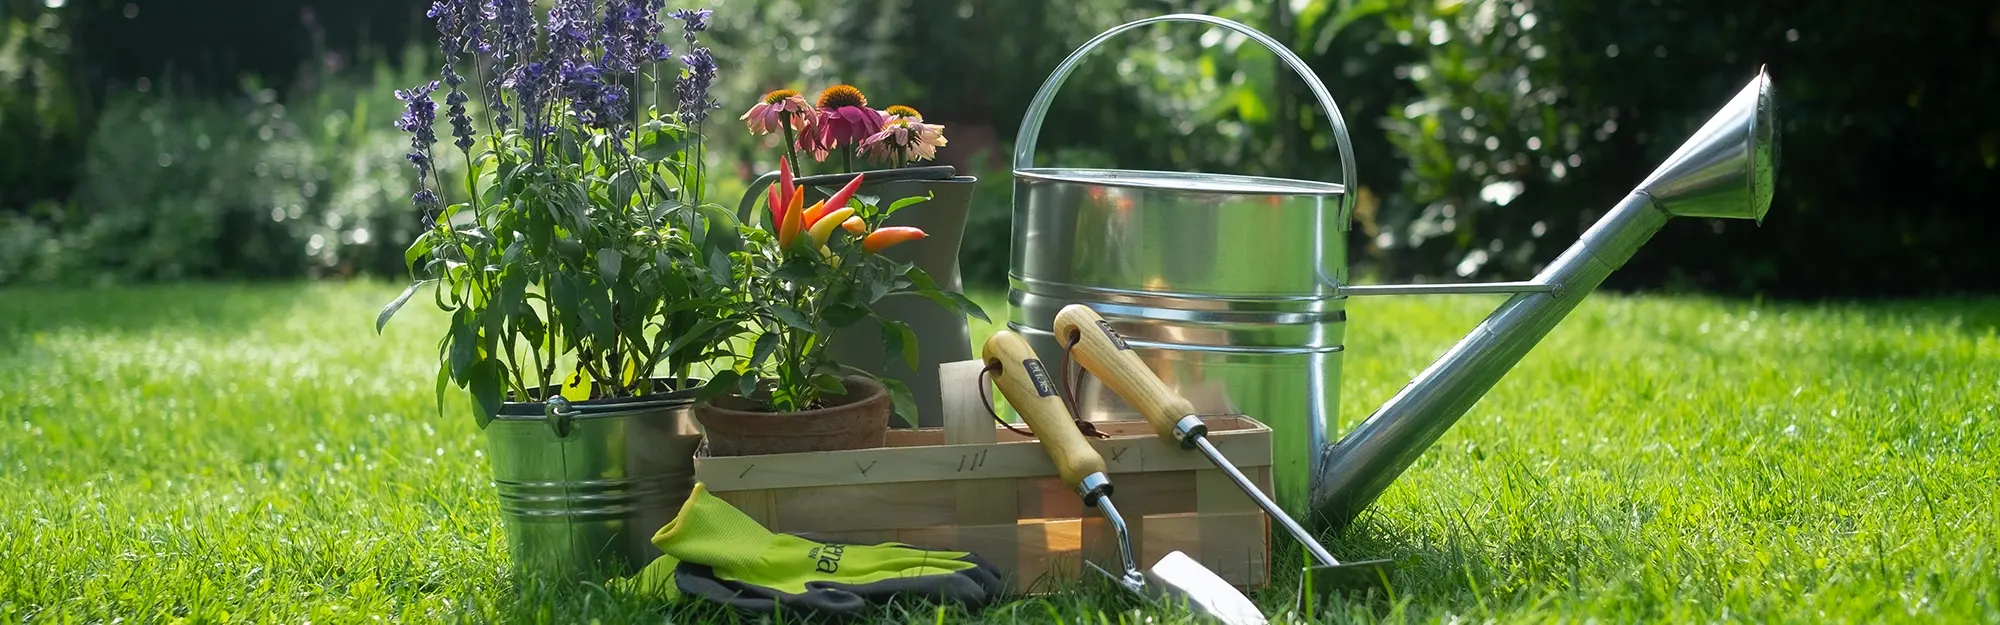 Tipps & Tricks für die Gartenpflege im Frühling